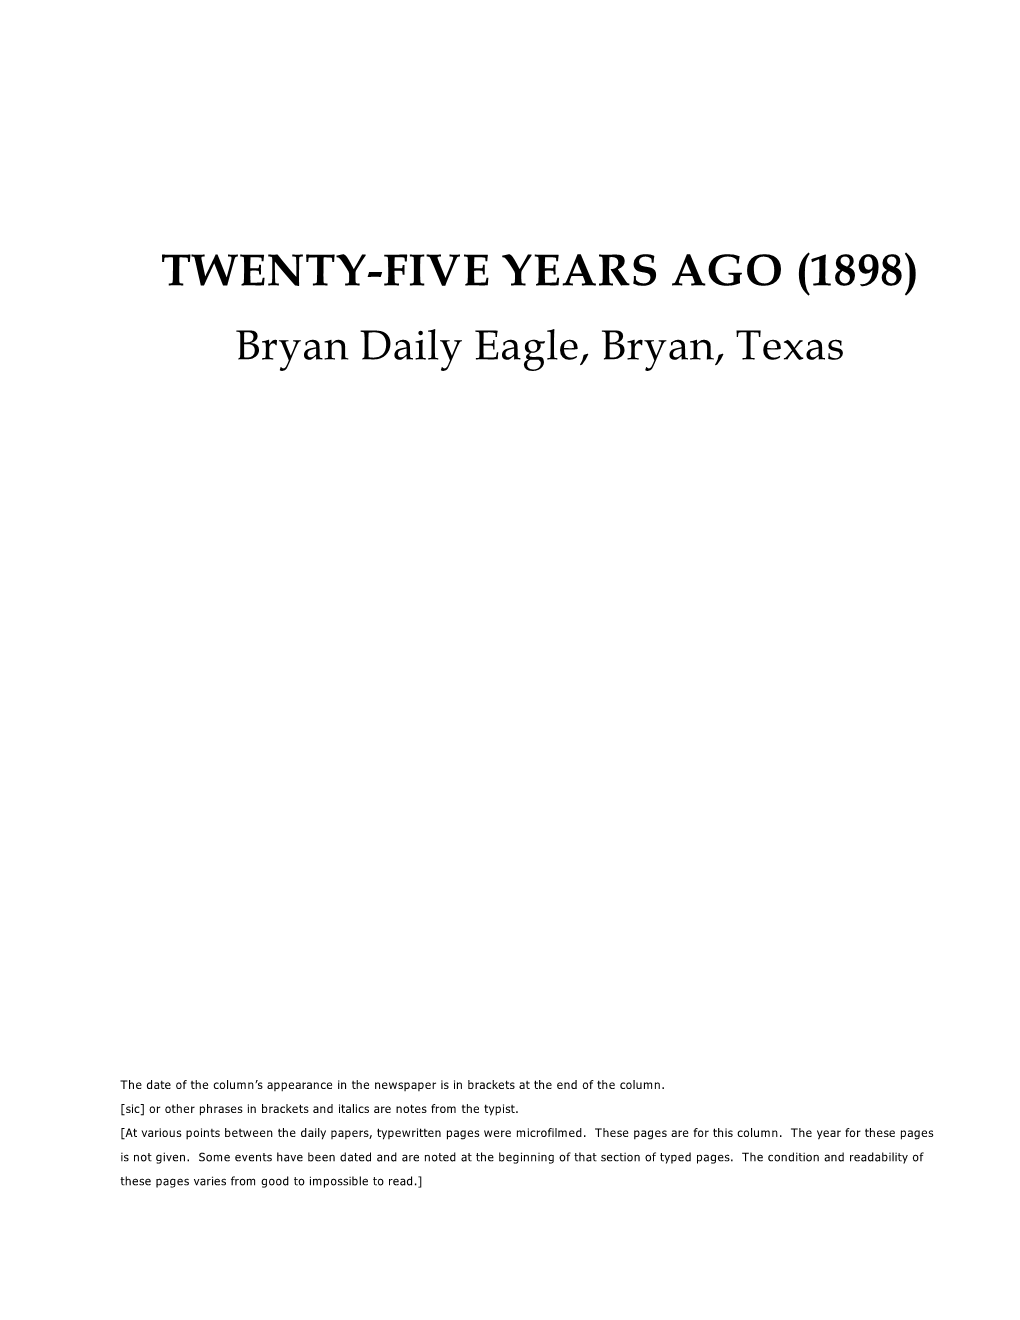 TWENTY-FIVE YEARS AGO (1898) Bryan Daily Eagle, Bryan, Texas